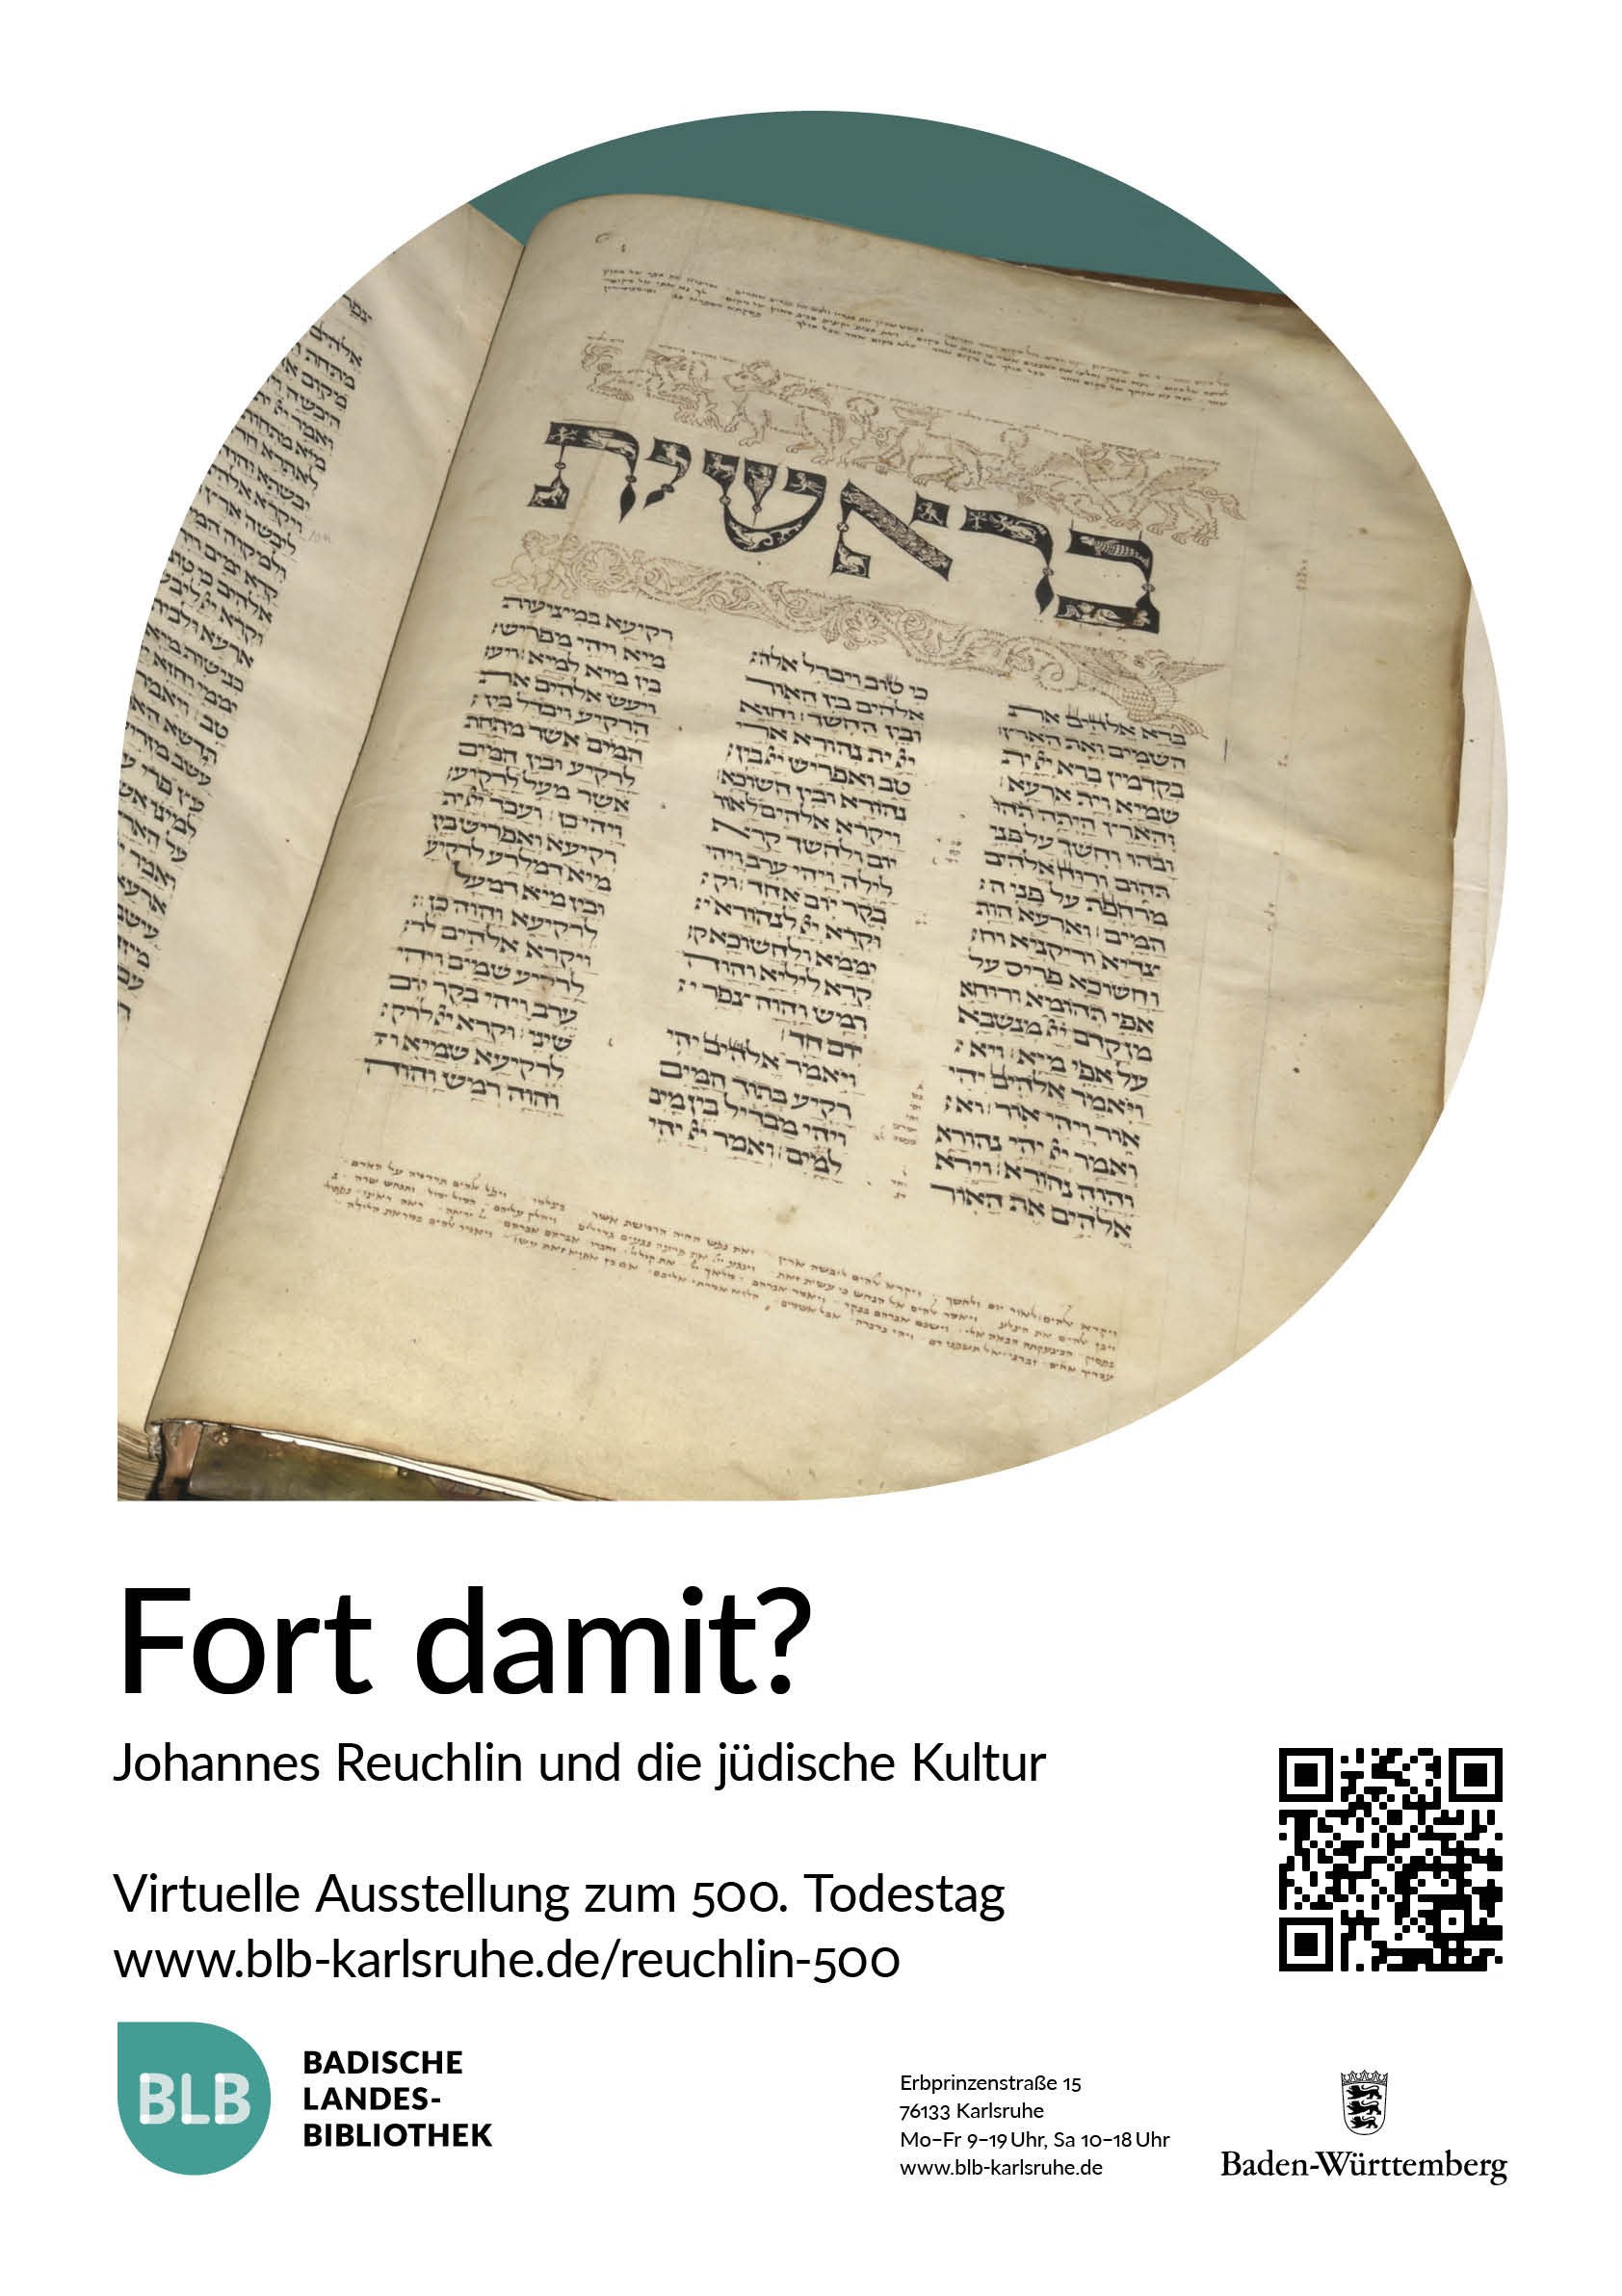 Zu sehen ist das Plakat der Virtuellen Ausstellung "Fort damit? Johannes Reuchlin und die jüdische Kultur" mit einem Ausschnitt einer hebräischen Handschrift. 